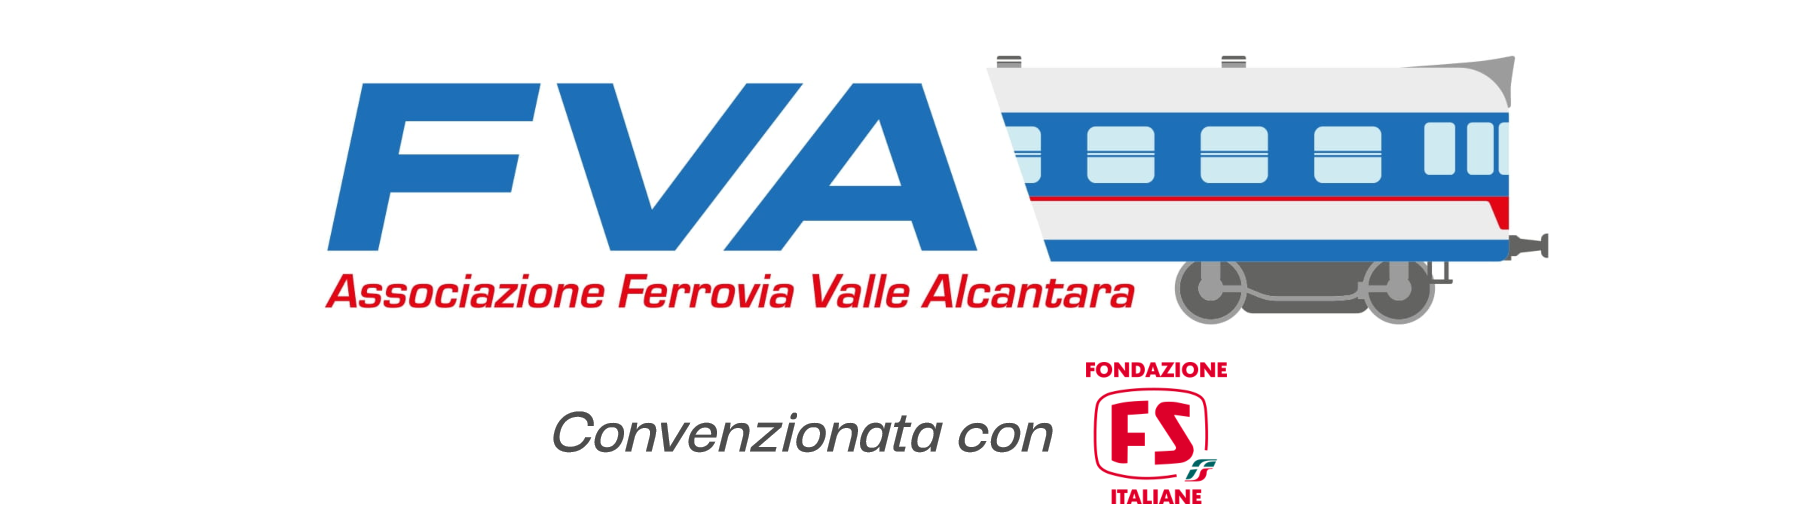 Attivit-Associazione Ferrovia Valle Alcantara